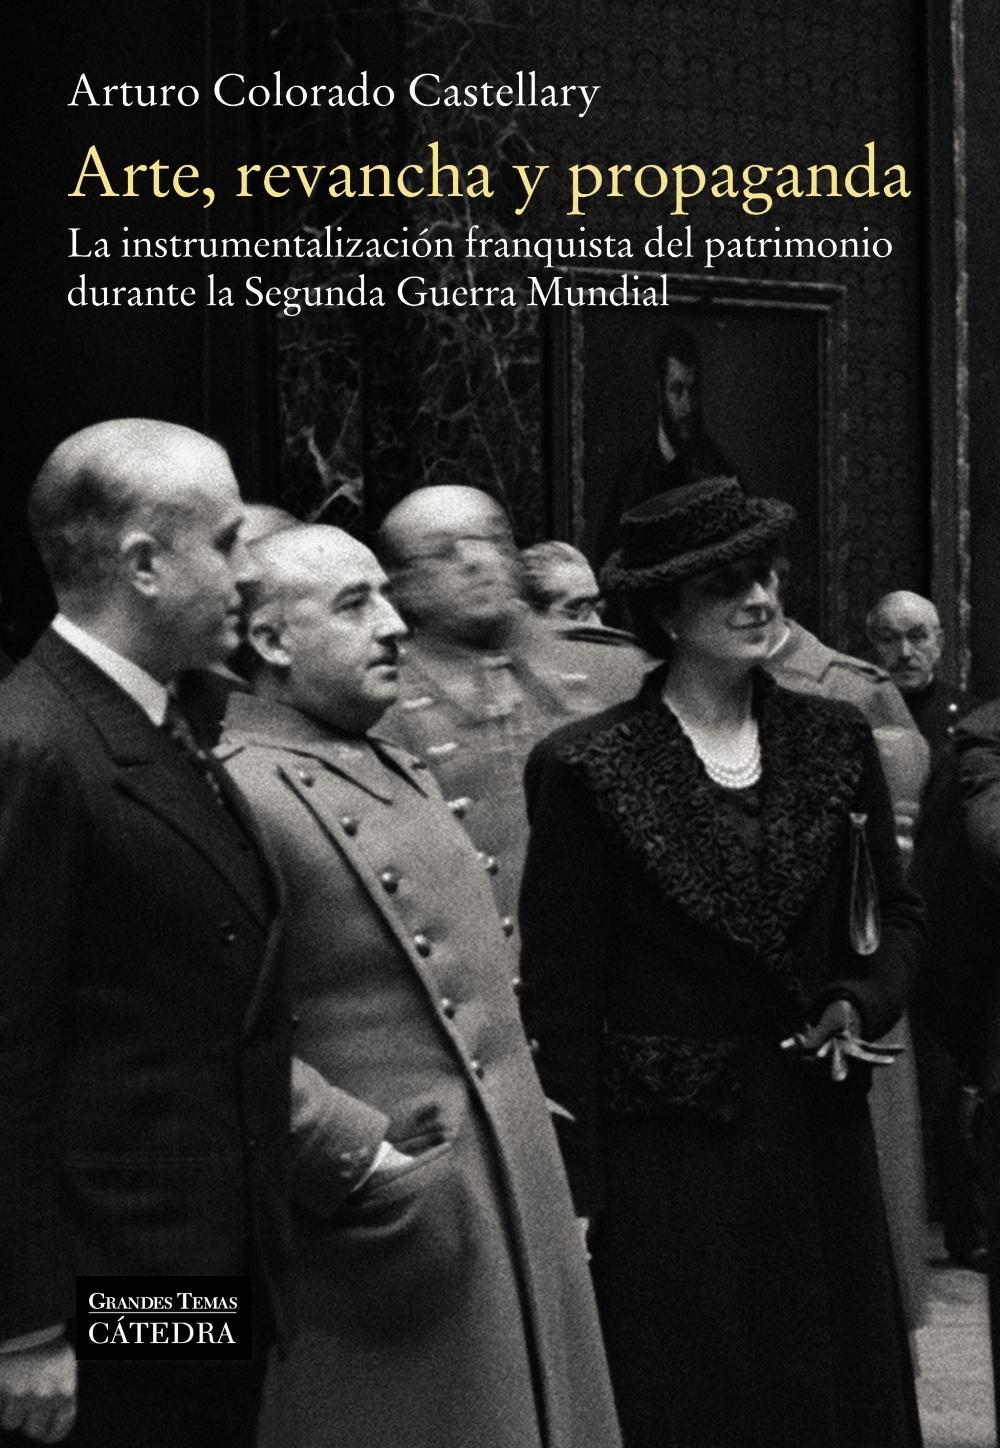 ARTE, REVANCHA Y PROPAGANDA "La instrumentalización franquista del patrimonio durante la Segunda Guer"